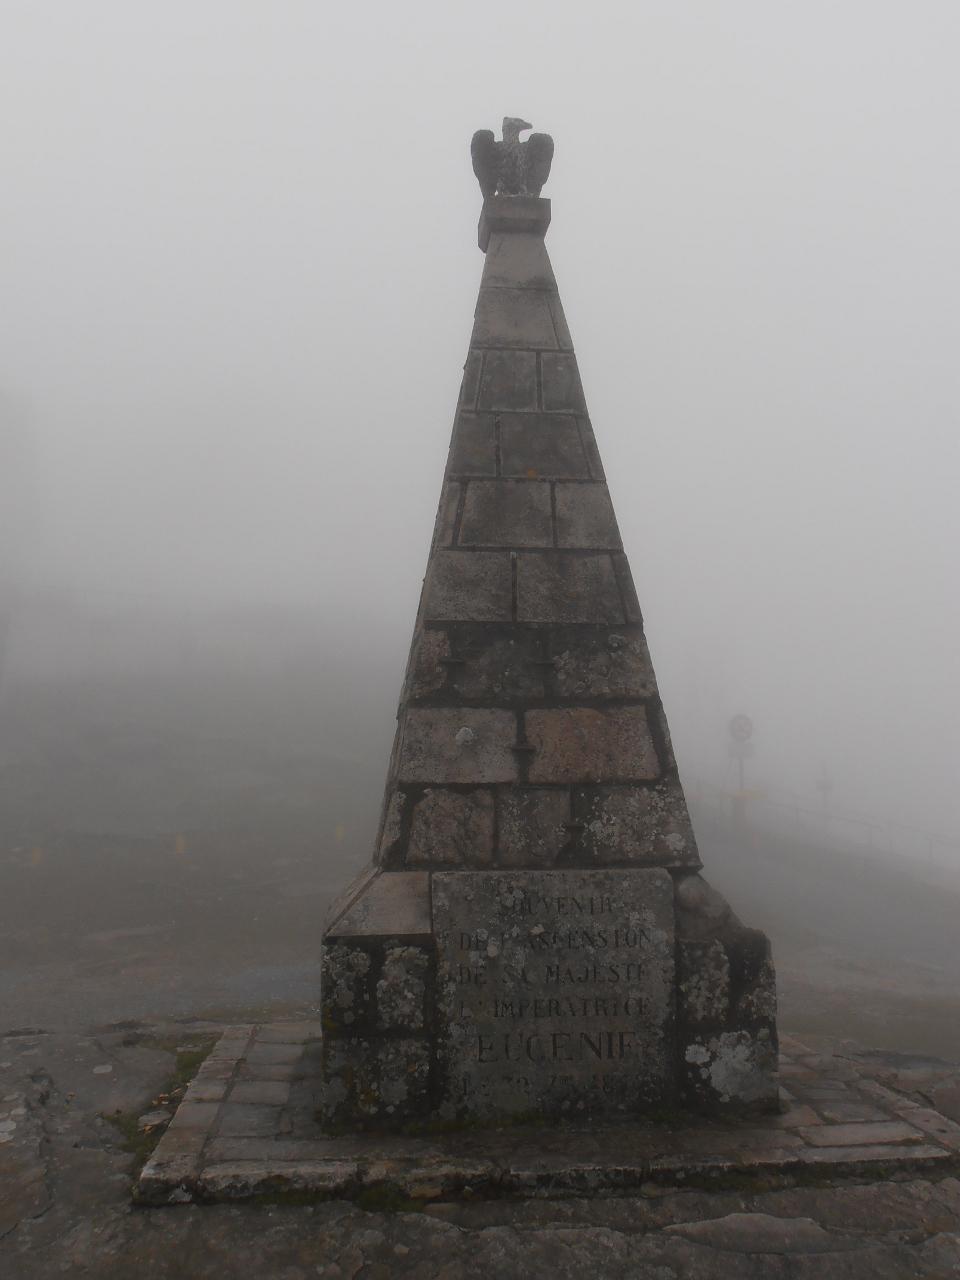 01 - monumento in cima, ricorda il passaggio dell'imperatrice Eugenia di Francia